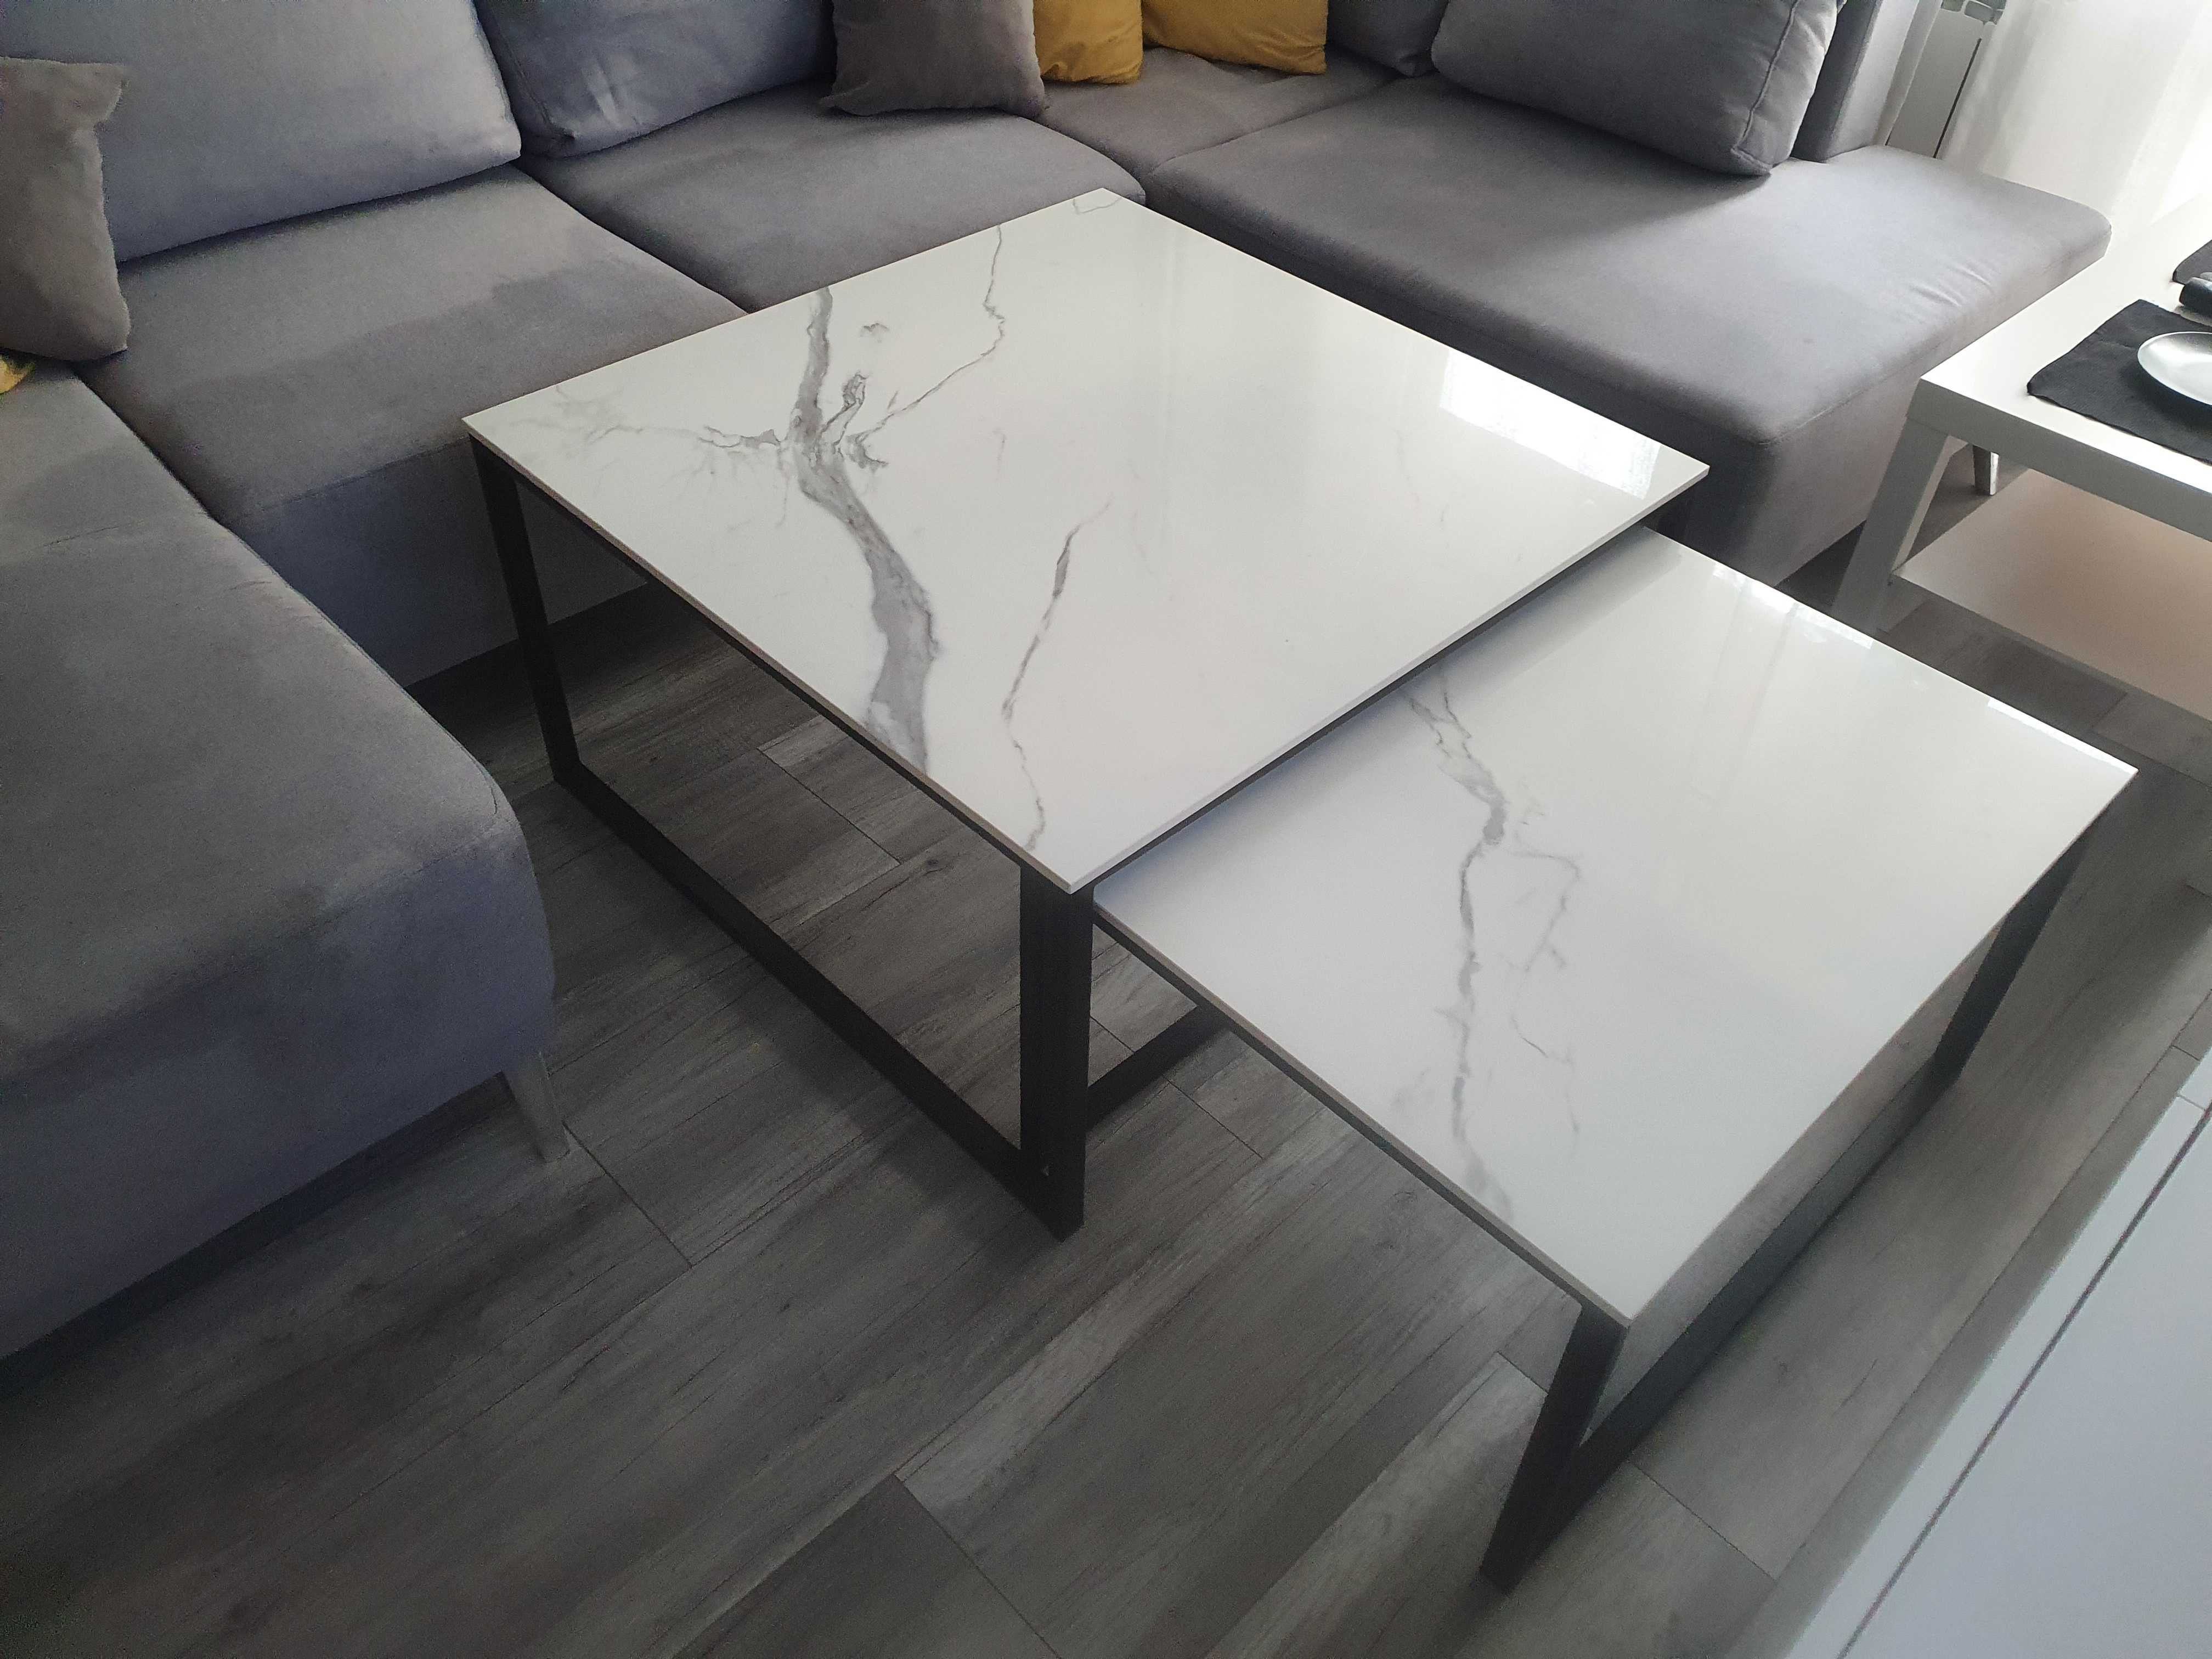 Stół/ława/biurko/stolik-na wymiar-spiek kwarcowy/drewn-industrial/loft